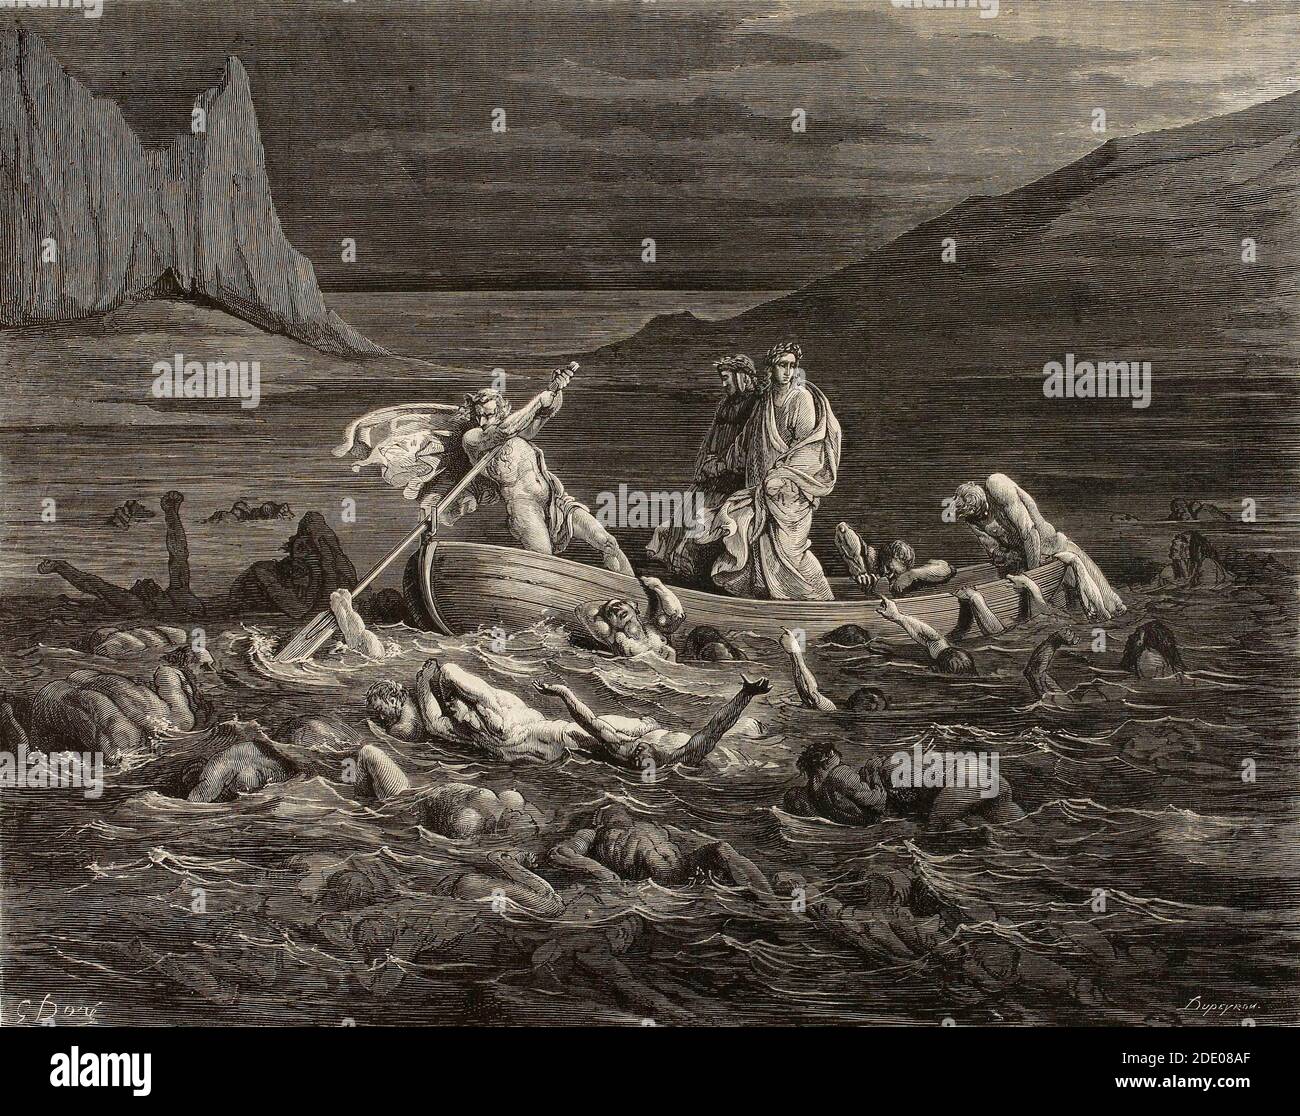 Dante Divina Commedia - Inferno - quinto cerchio - Flegyas FERRIES Dante e Virgilio attraverso la Stix, tra le dighe della palude - canto VIII - illustrazione di Gustave Dorè Foto Stock